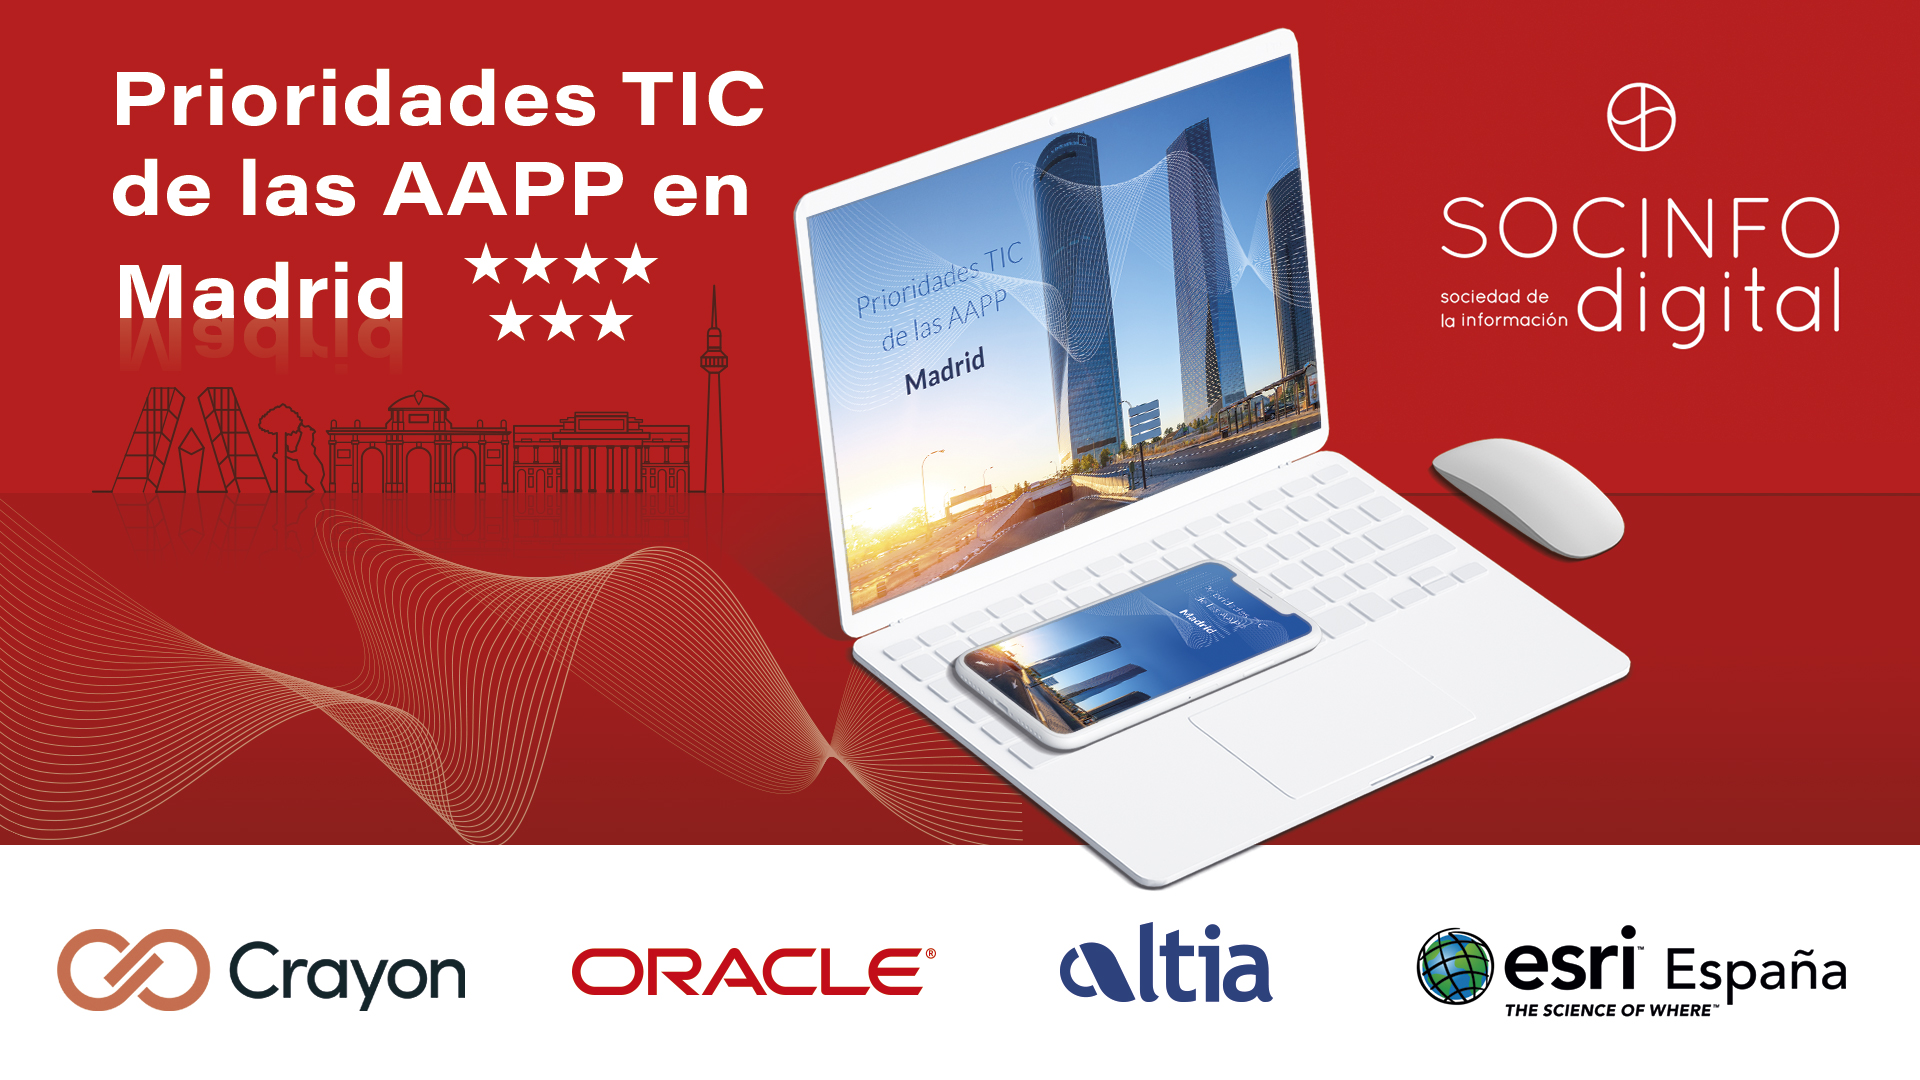 Prioridades TIC de las AAPP en Madrid